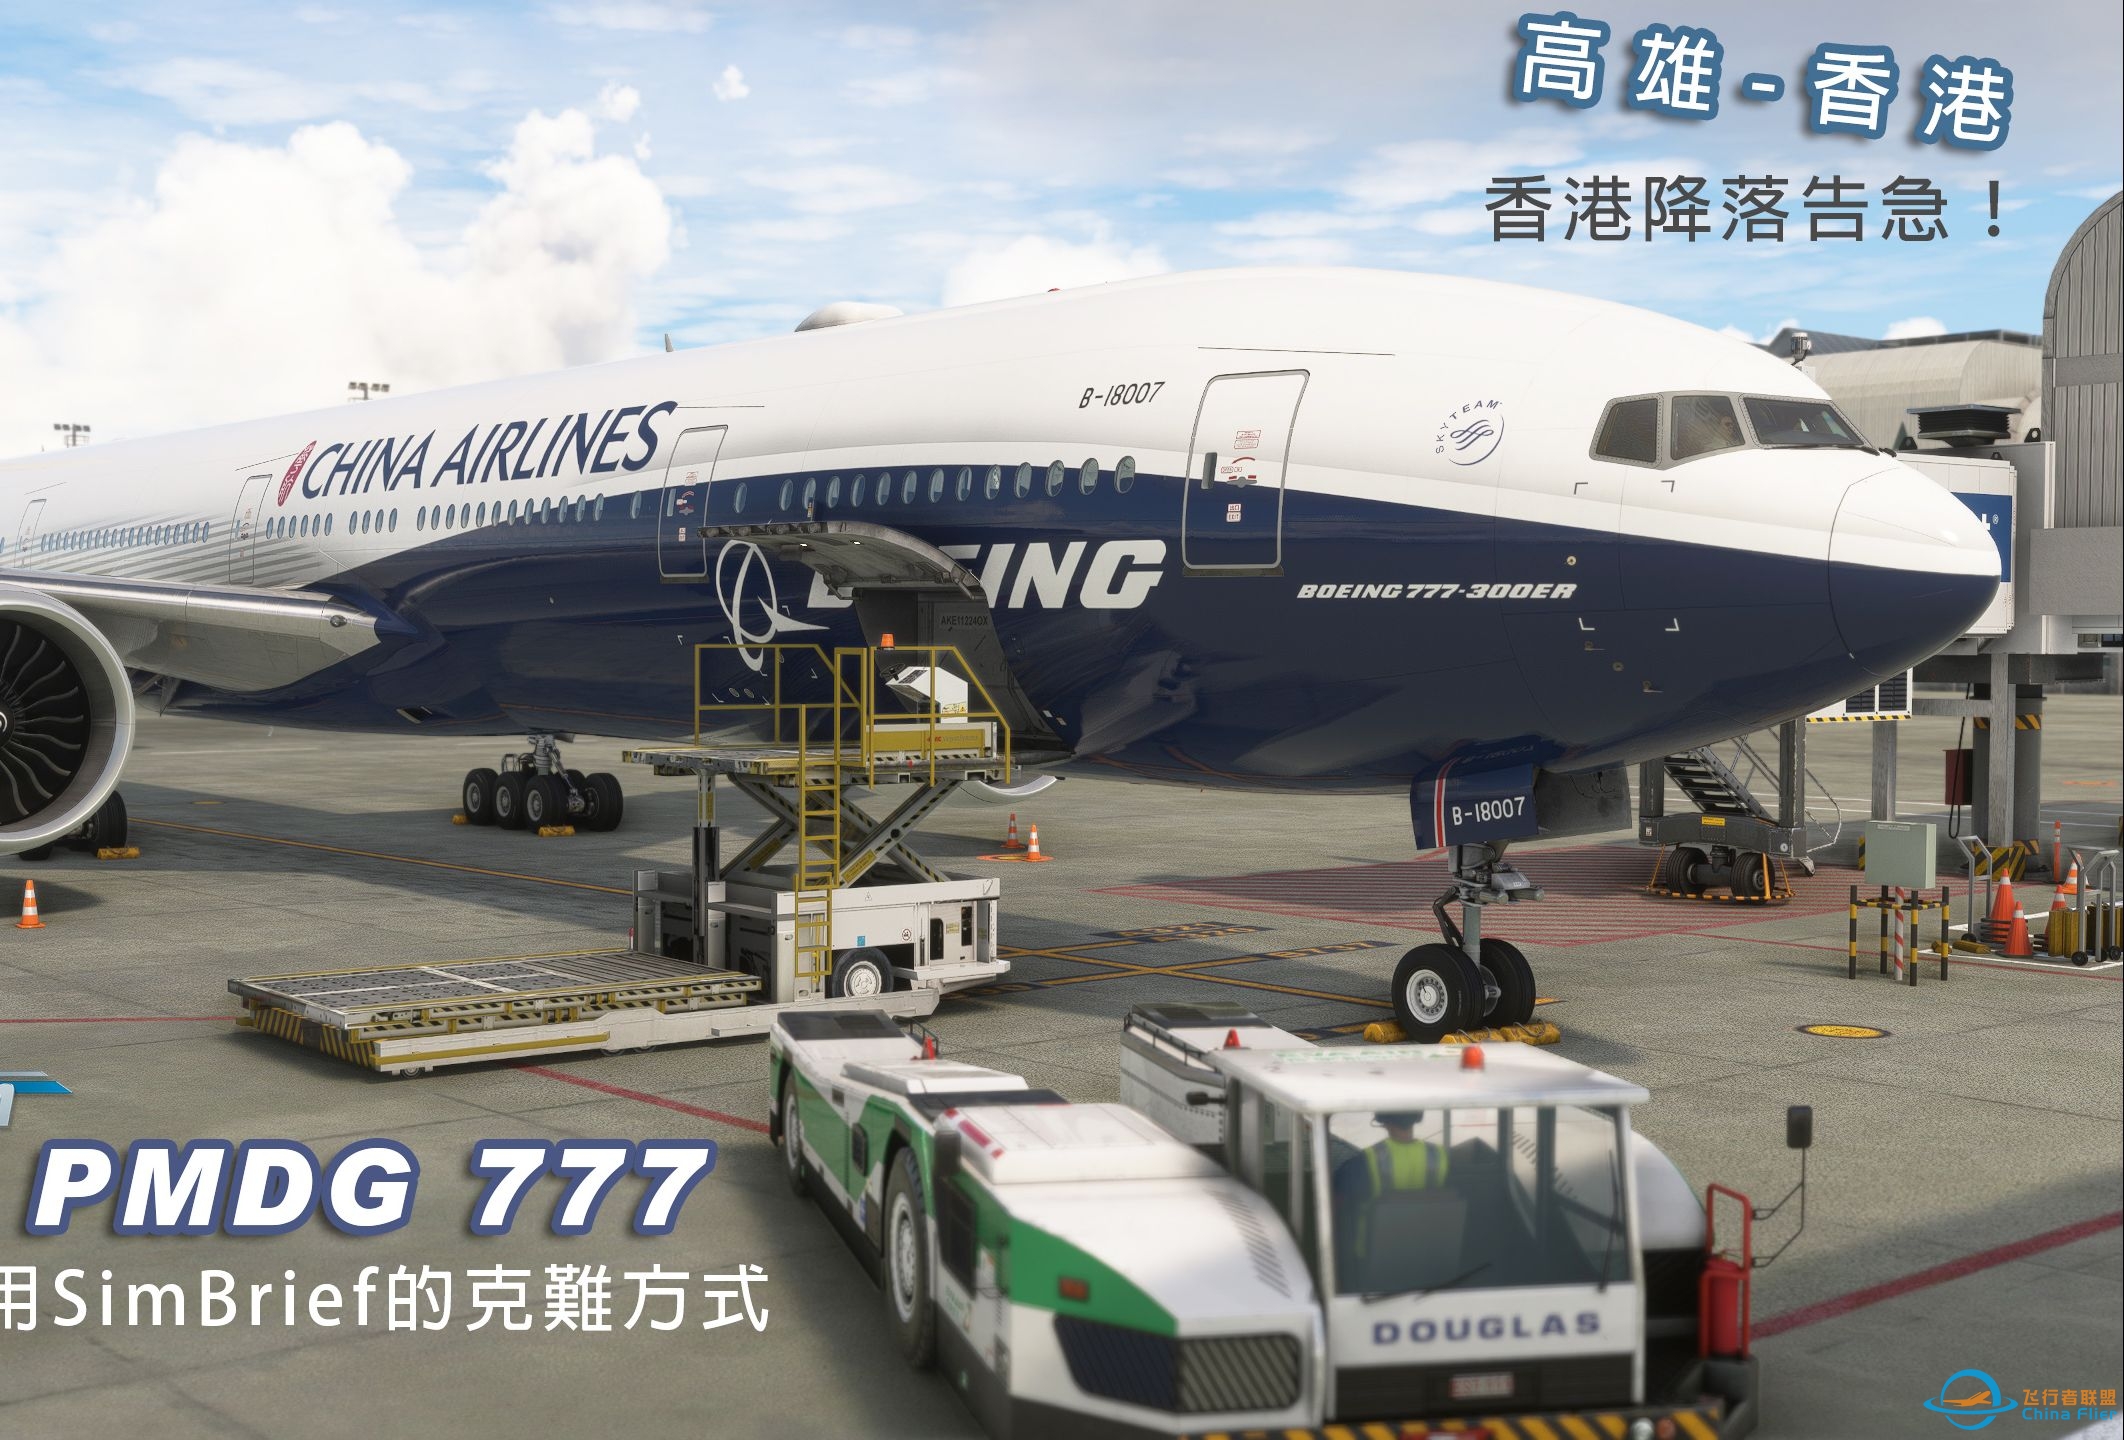 微软飞行模拟 PMDG 777 高雄-香港 免费仔使用SimBrief的克难方式 香港降落告急！-392 